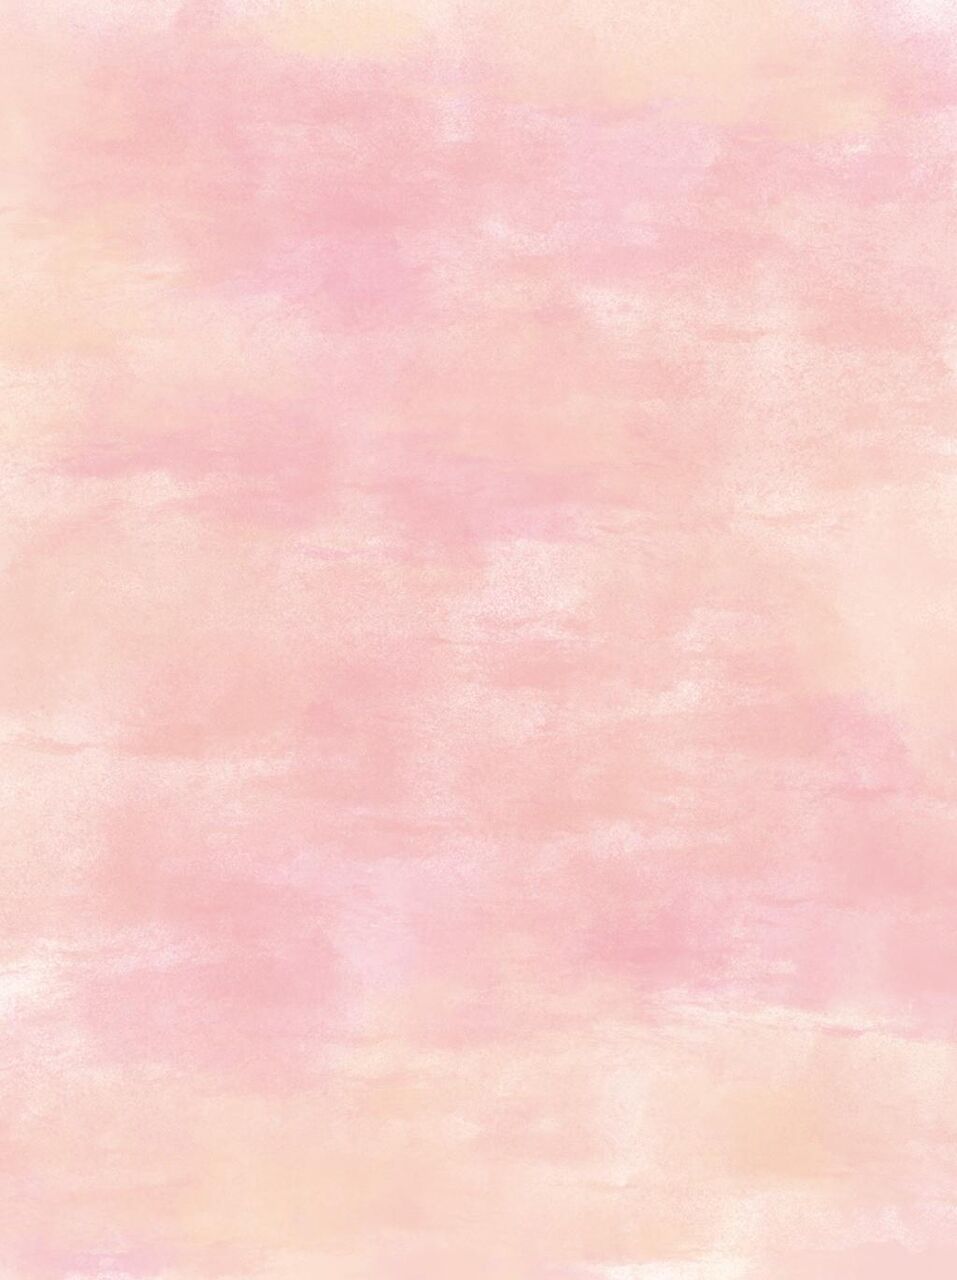 100以上 Iphone 壁紙 グラデーション ピンク ただ素晴らしい花